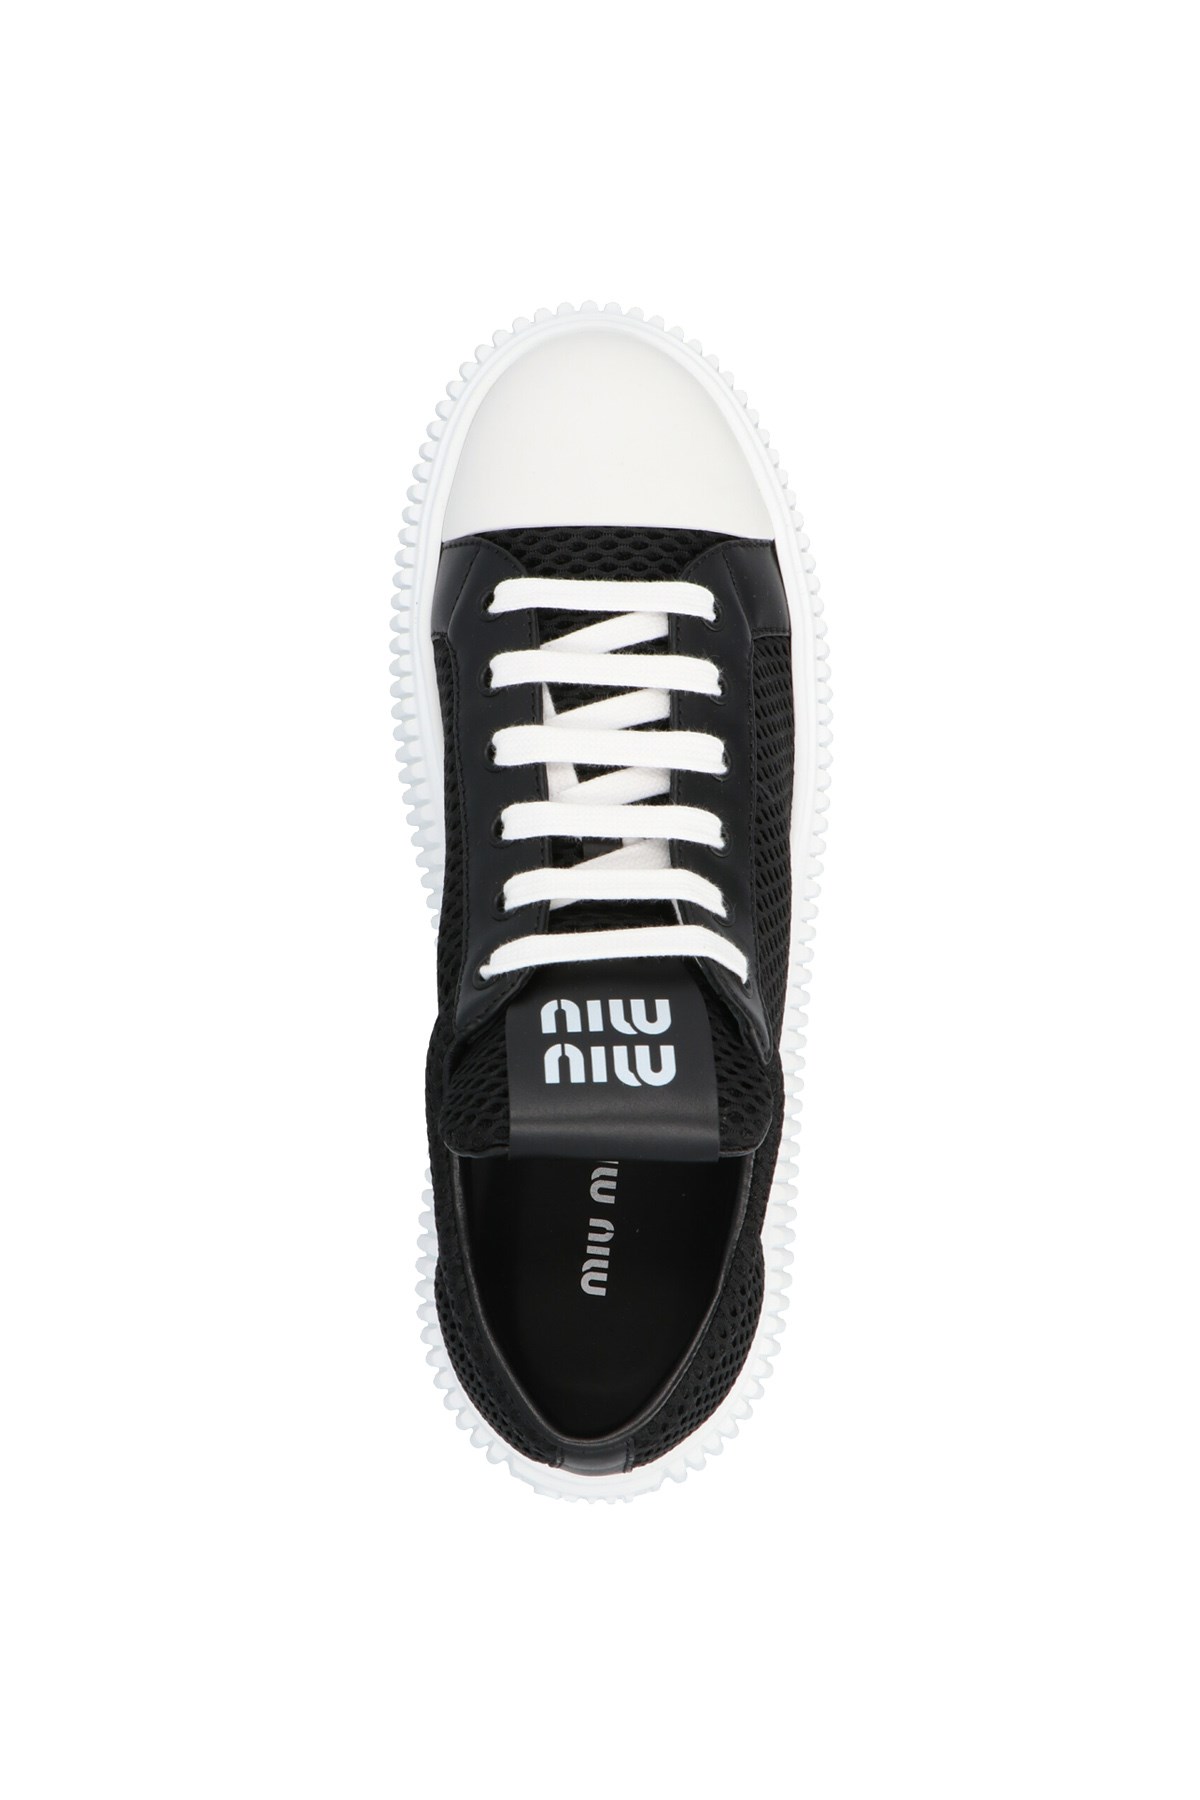 商品Miu Miu | MIU MIU 女士黑色帆布鞋 5E726D-77T-F0002,商家Beyond Italylux,价格¥3016图片